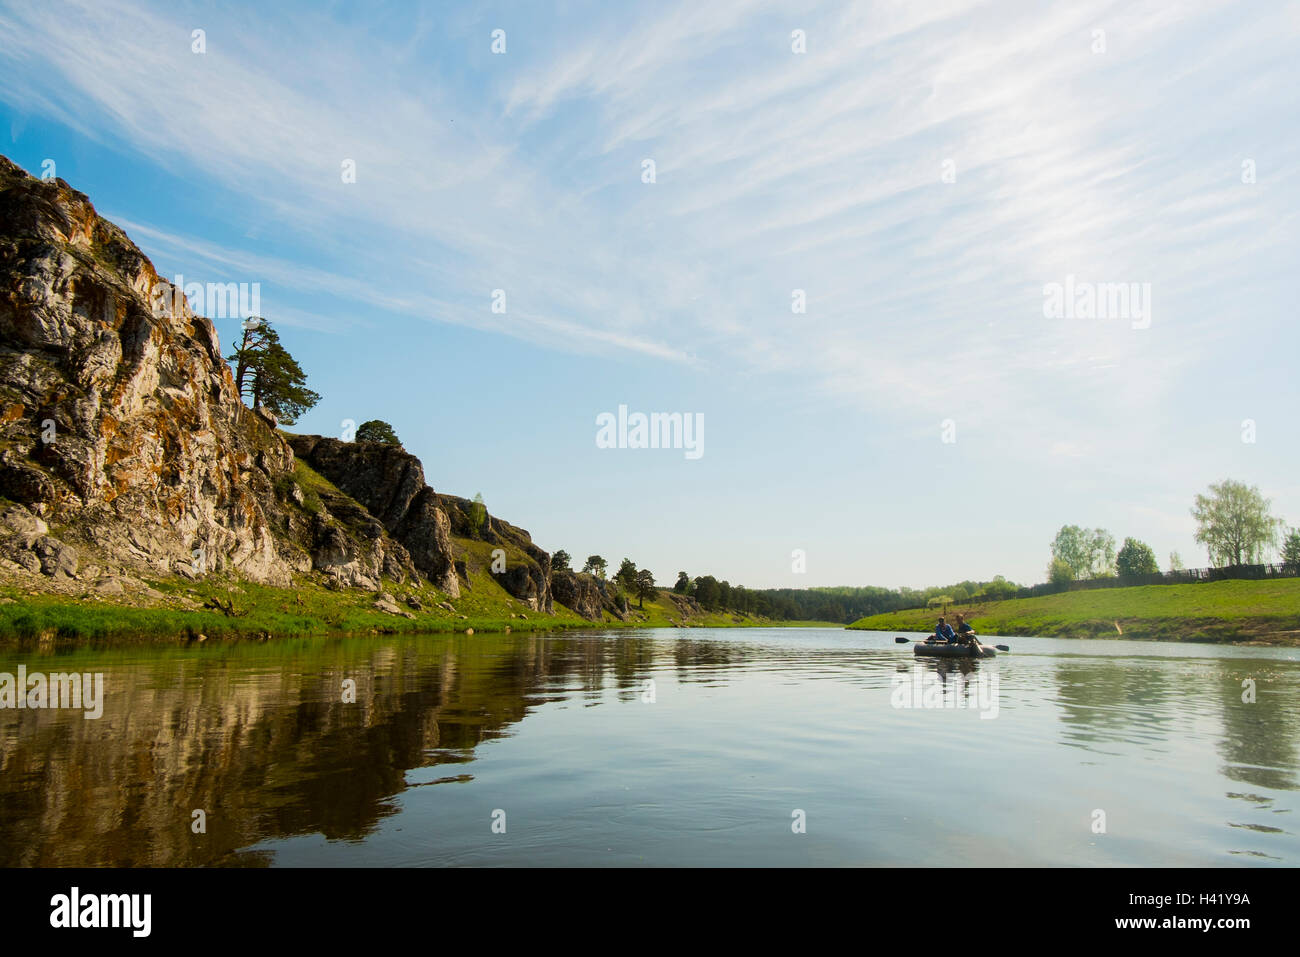 Uomini caucasici in zattera gonfiabile sul fiume Foto Stock